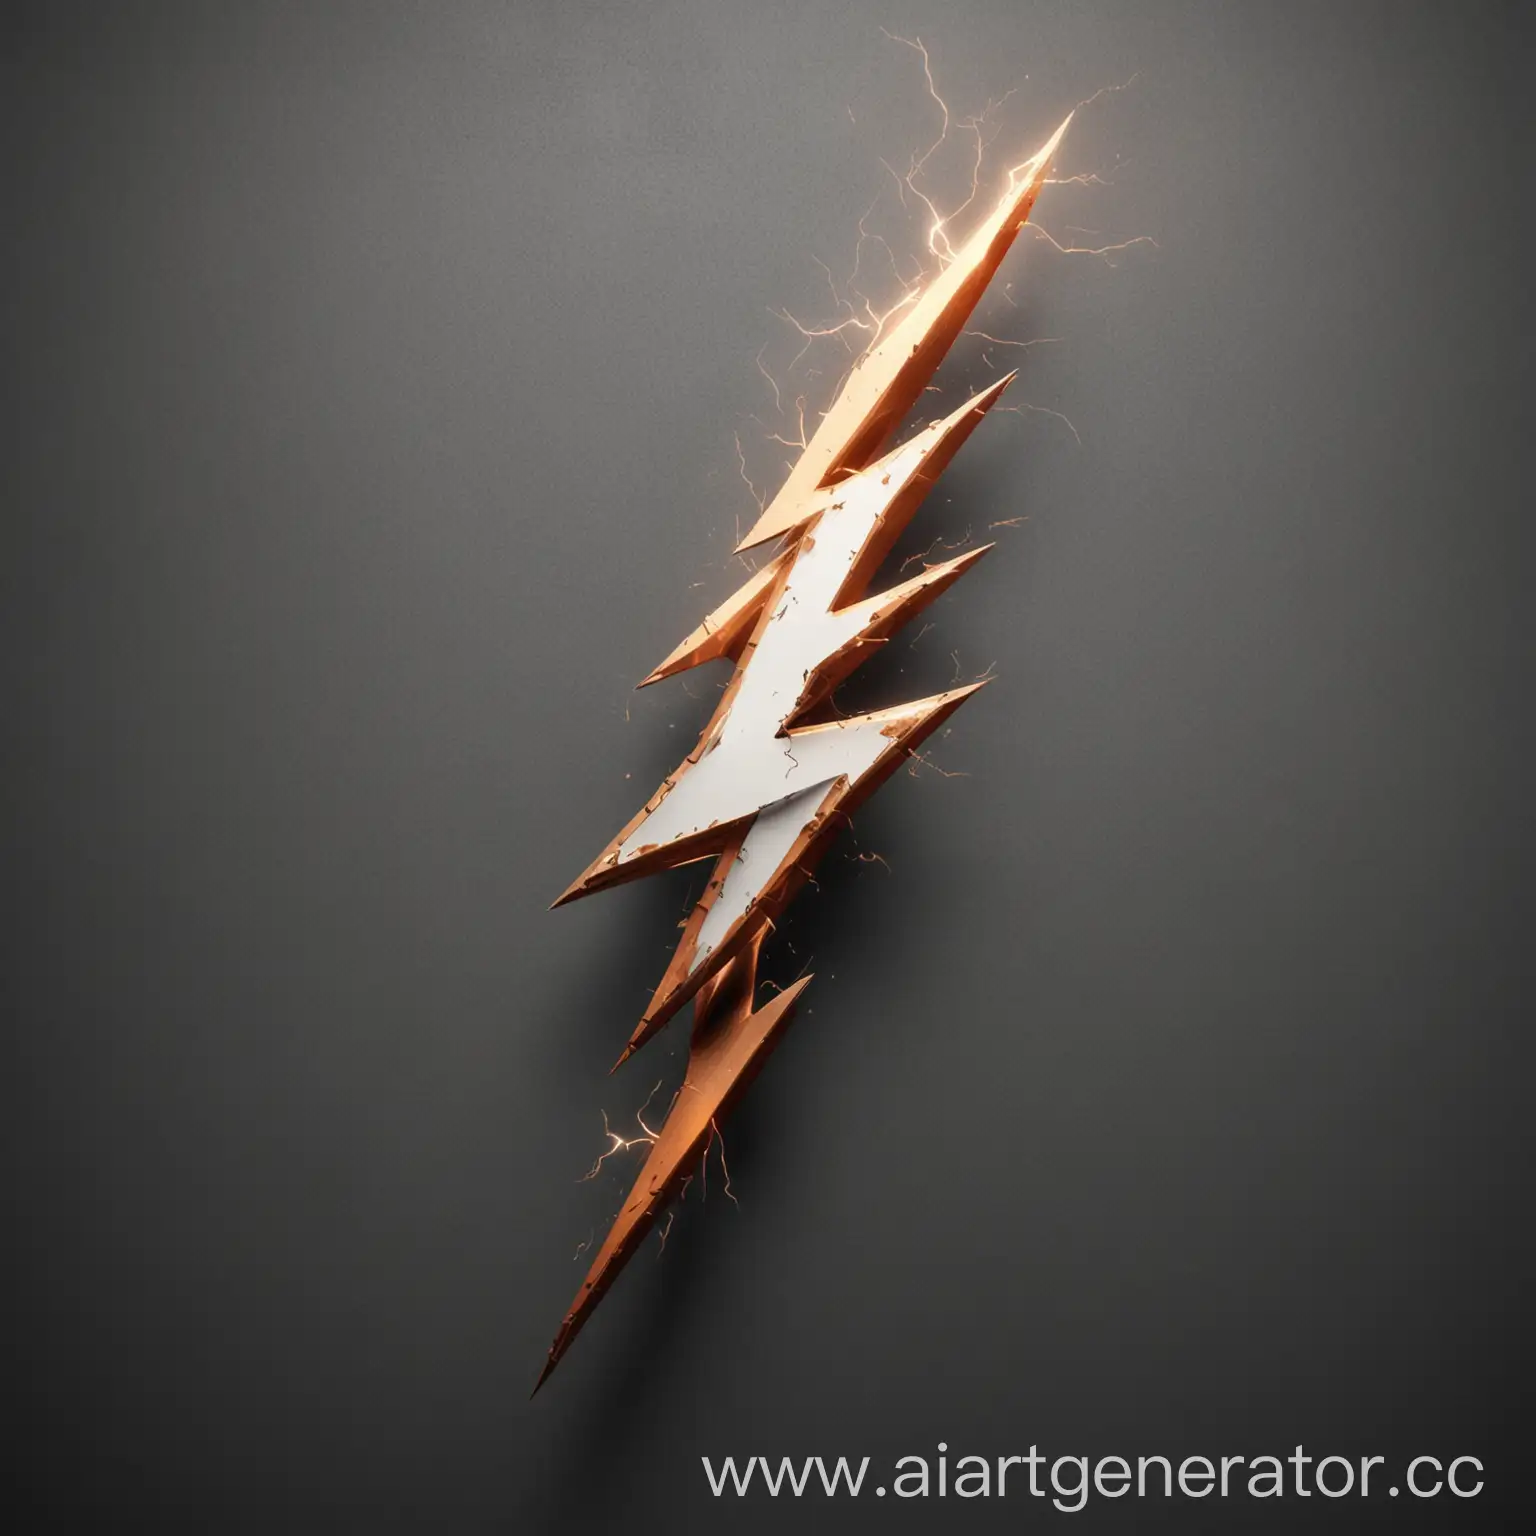 Un logotipo que represente un rayo o una descarga eléctrica estilizada, combinado con el nombre del producto en una fuente moderna y dinámica.